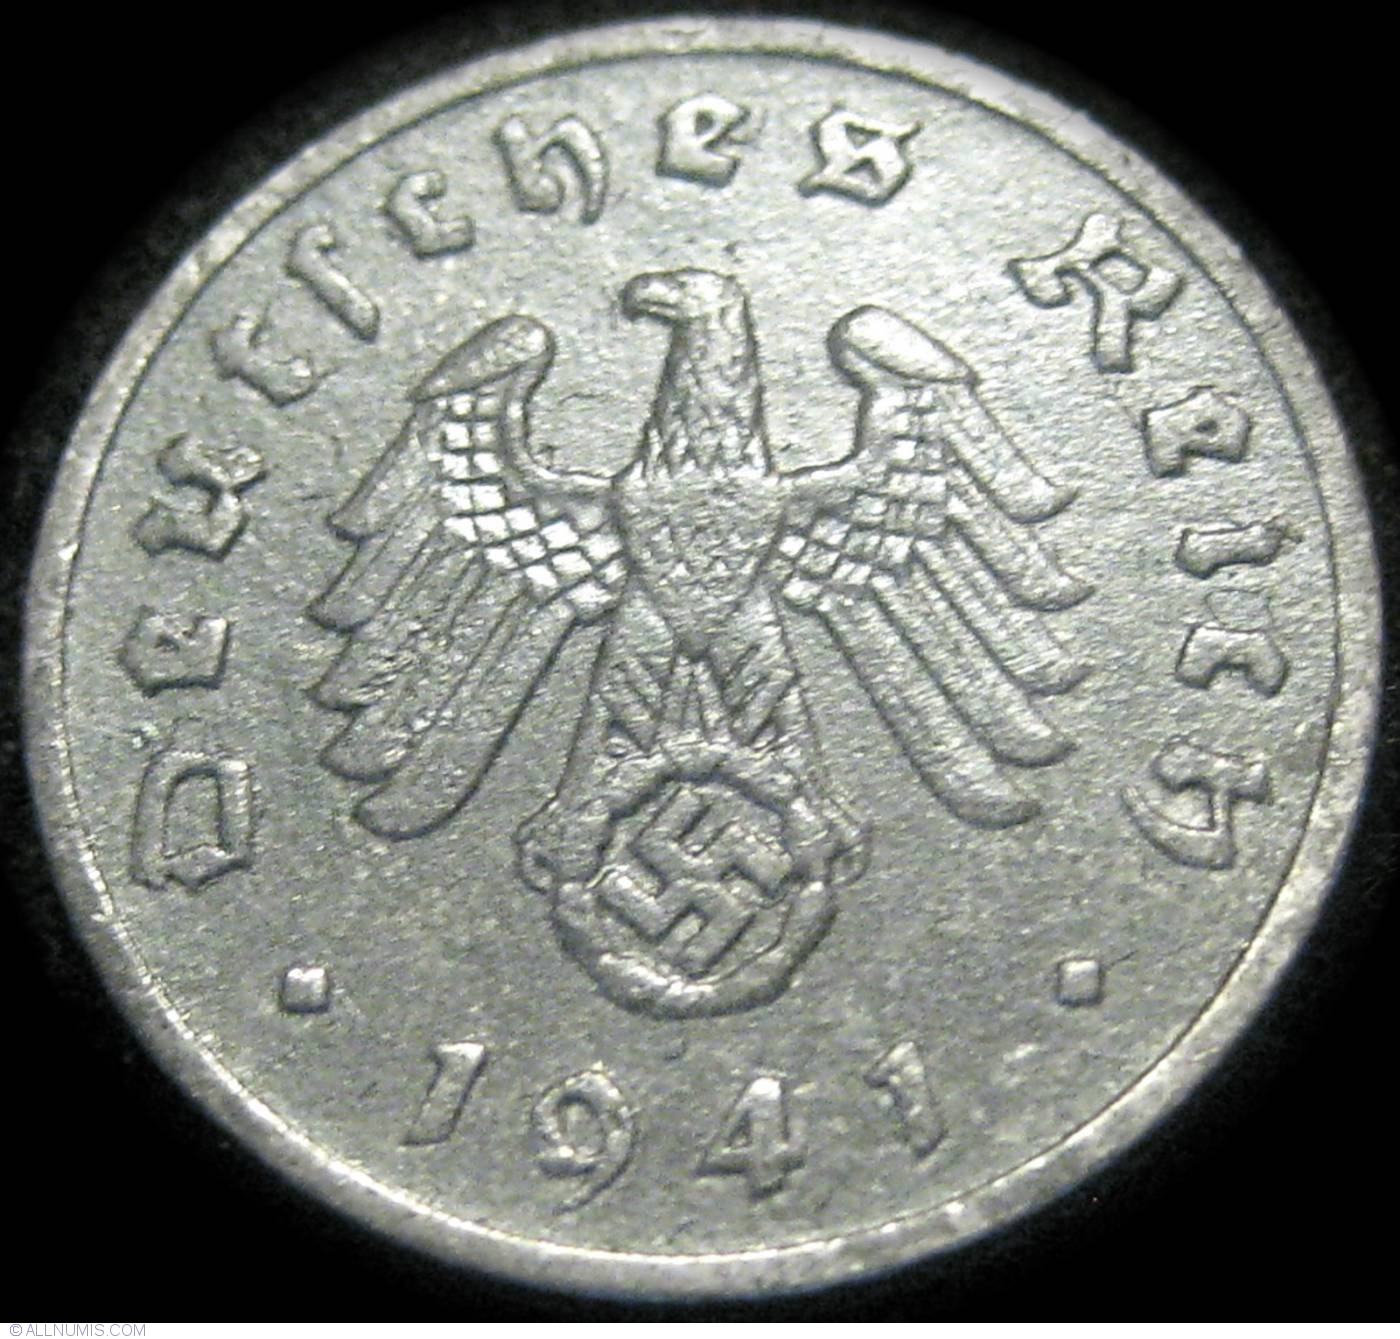 1 Reichspfennig 1941 F, Third Reich (1933-1945) - Germany - Coin - 23292
